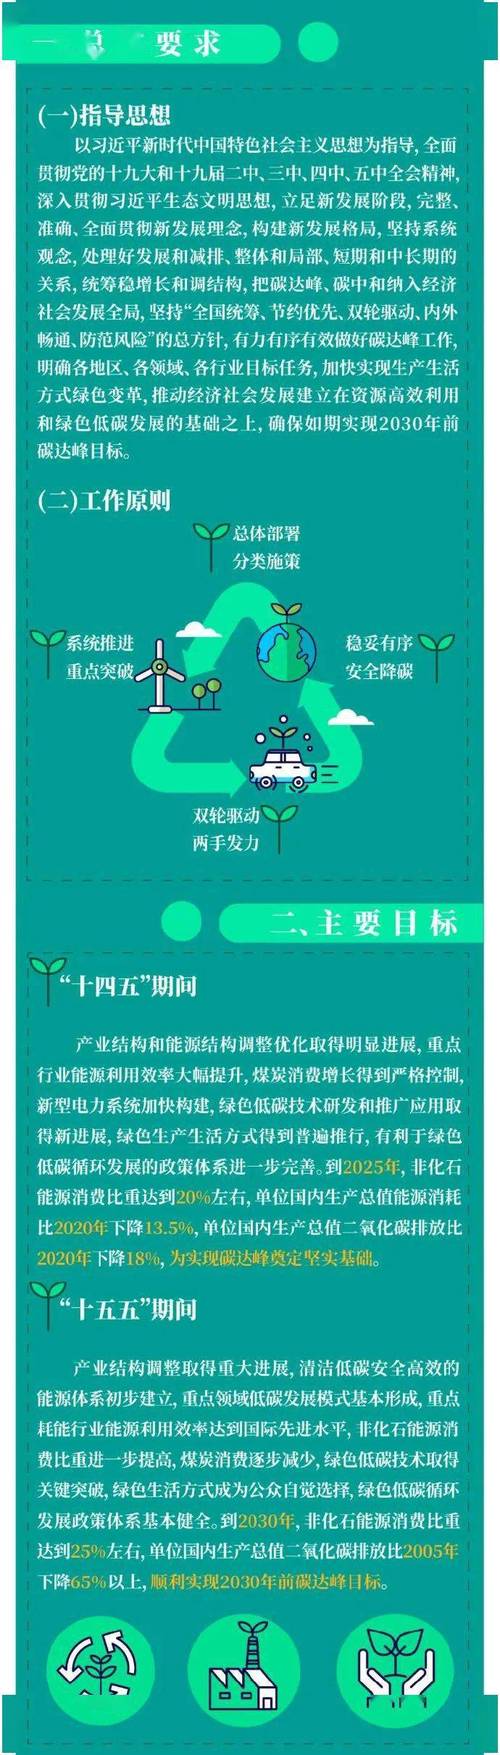 黑龍江省碳達峰實施方案出台（黑龍江紮實開展碳達峰碳中和計量體系建設工作）1